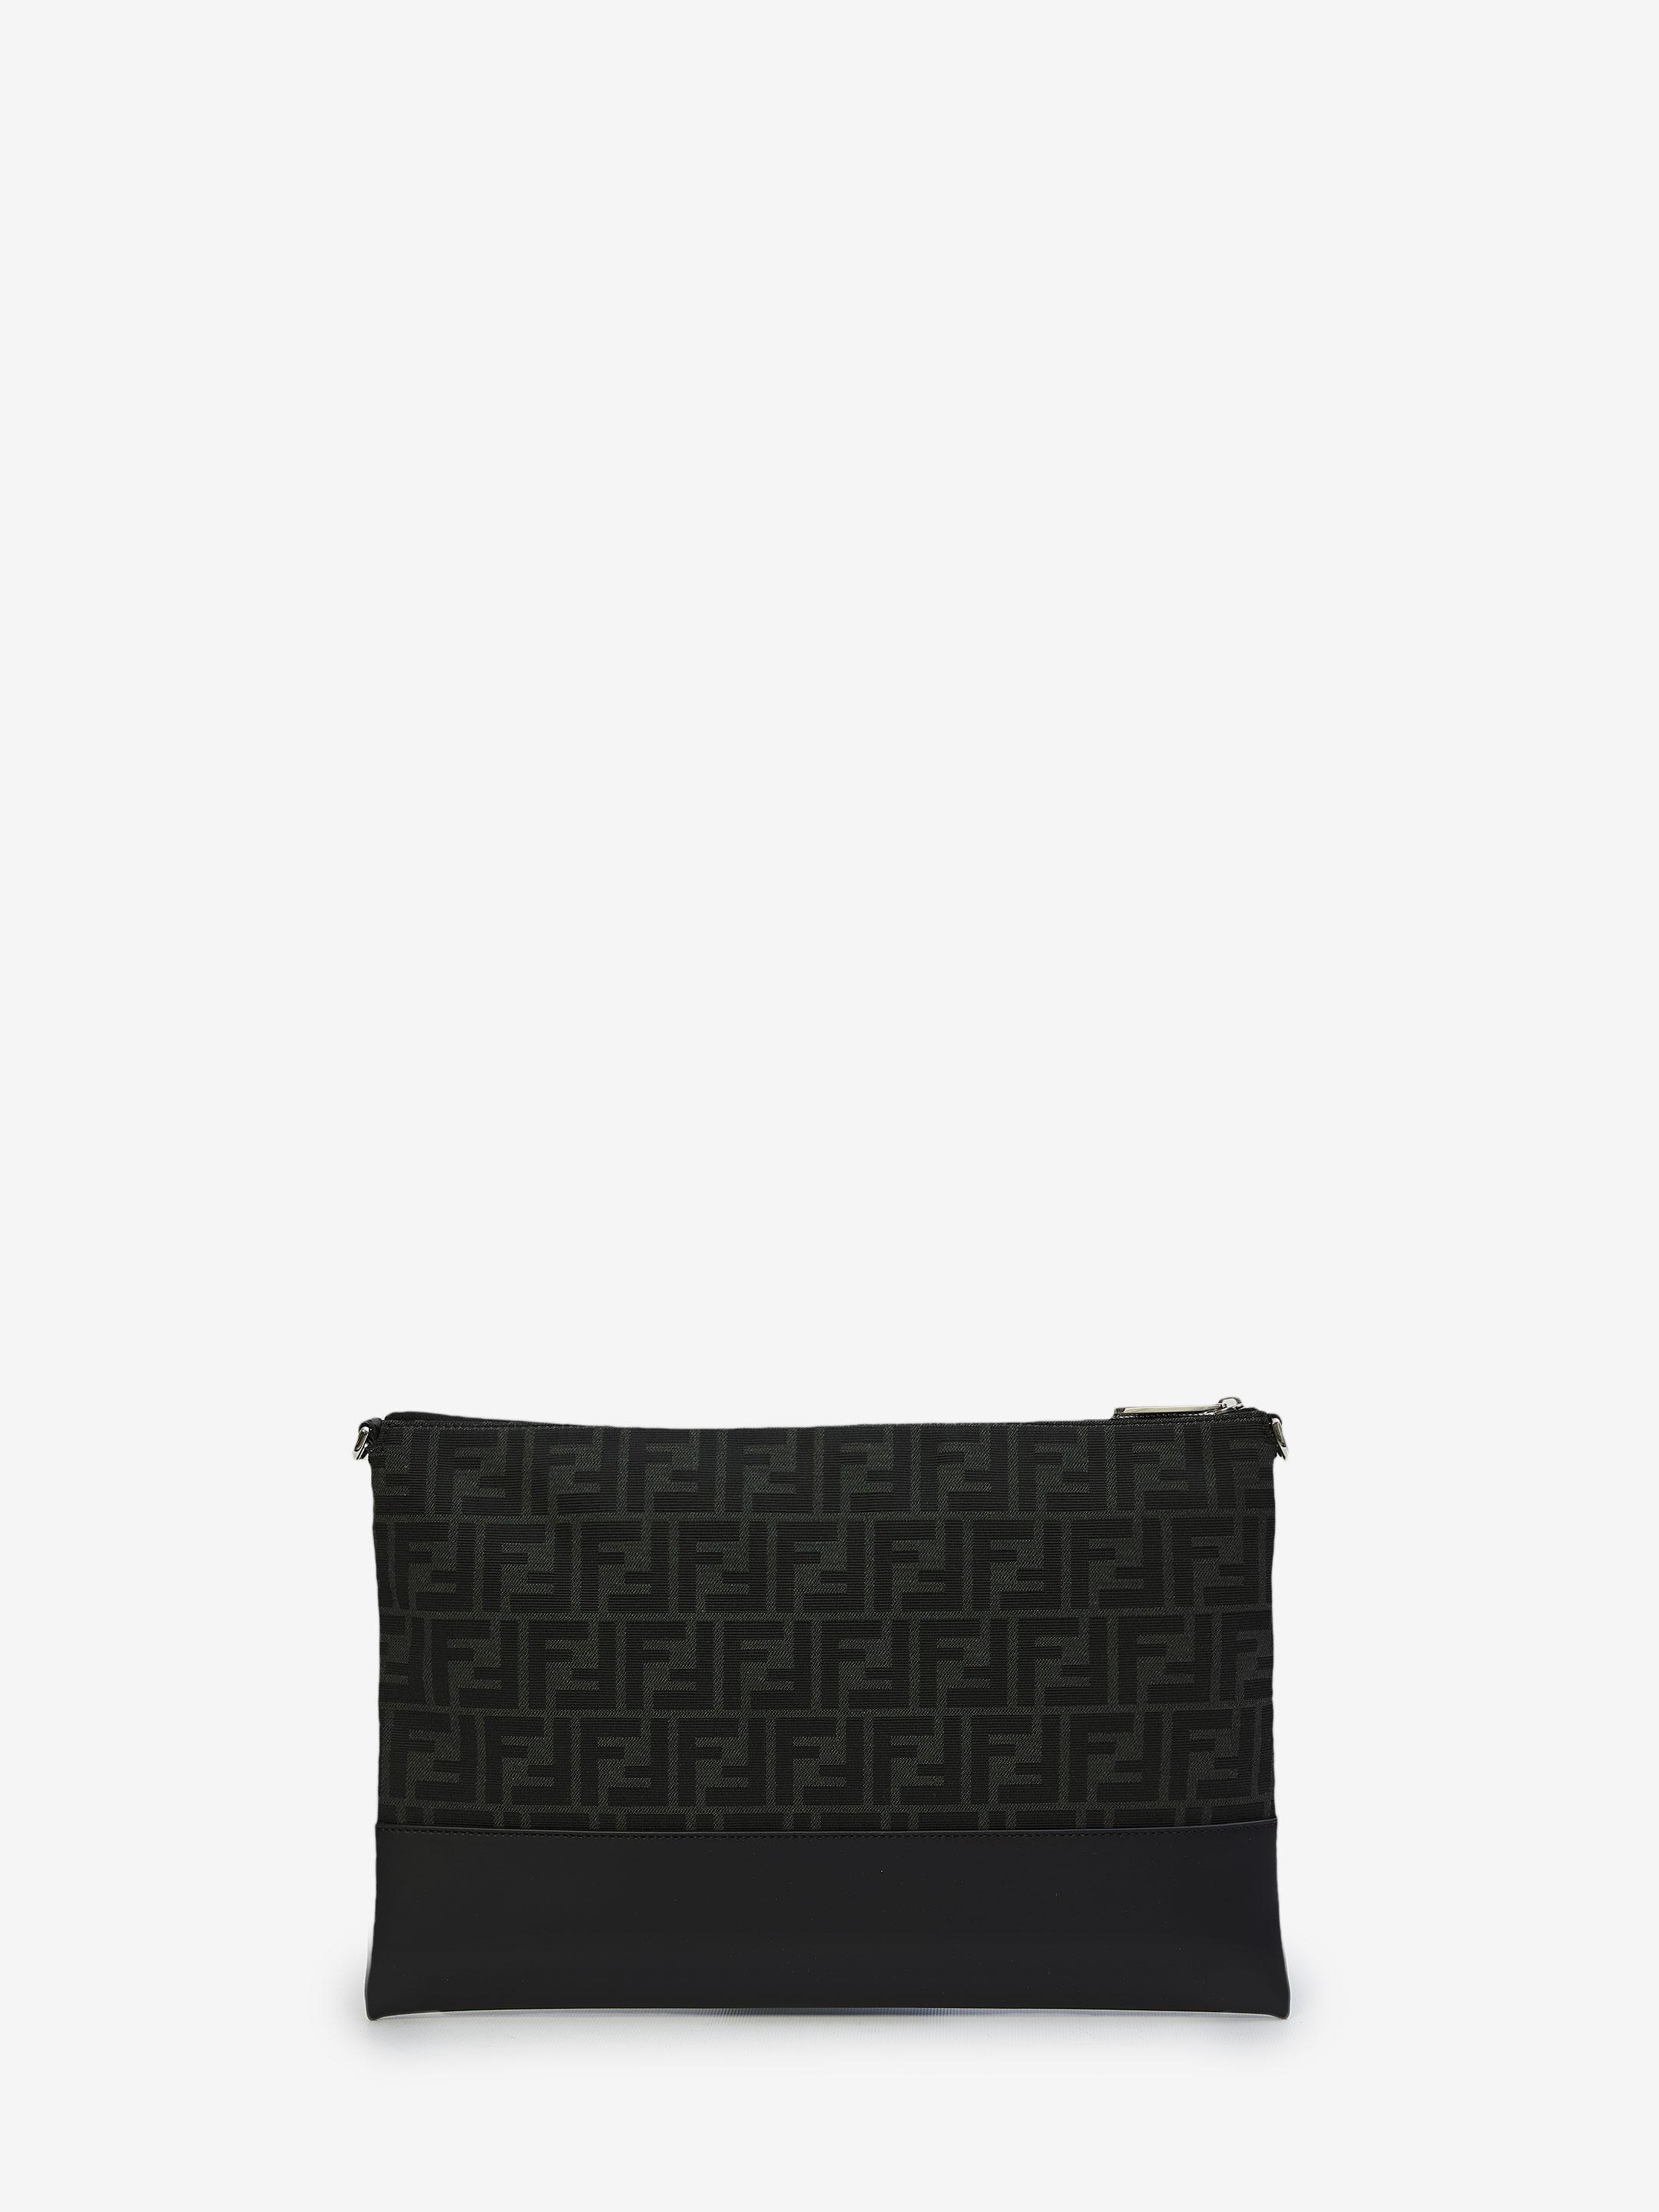 NEW FENDI Sunshine Shopper Tote Medium Black White Shoulder Bag Purse NWT  $3100 | eBay